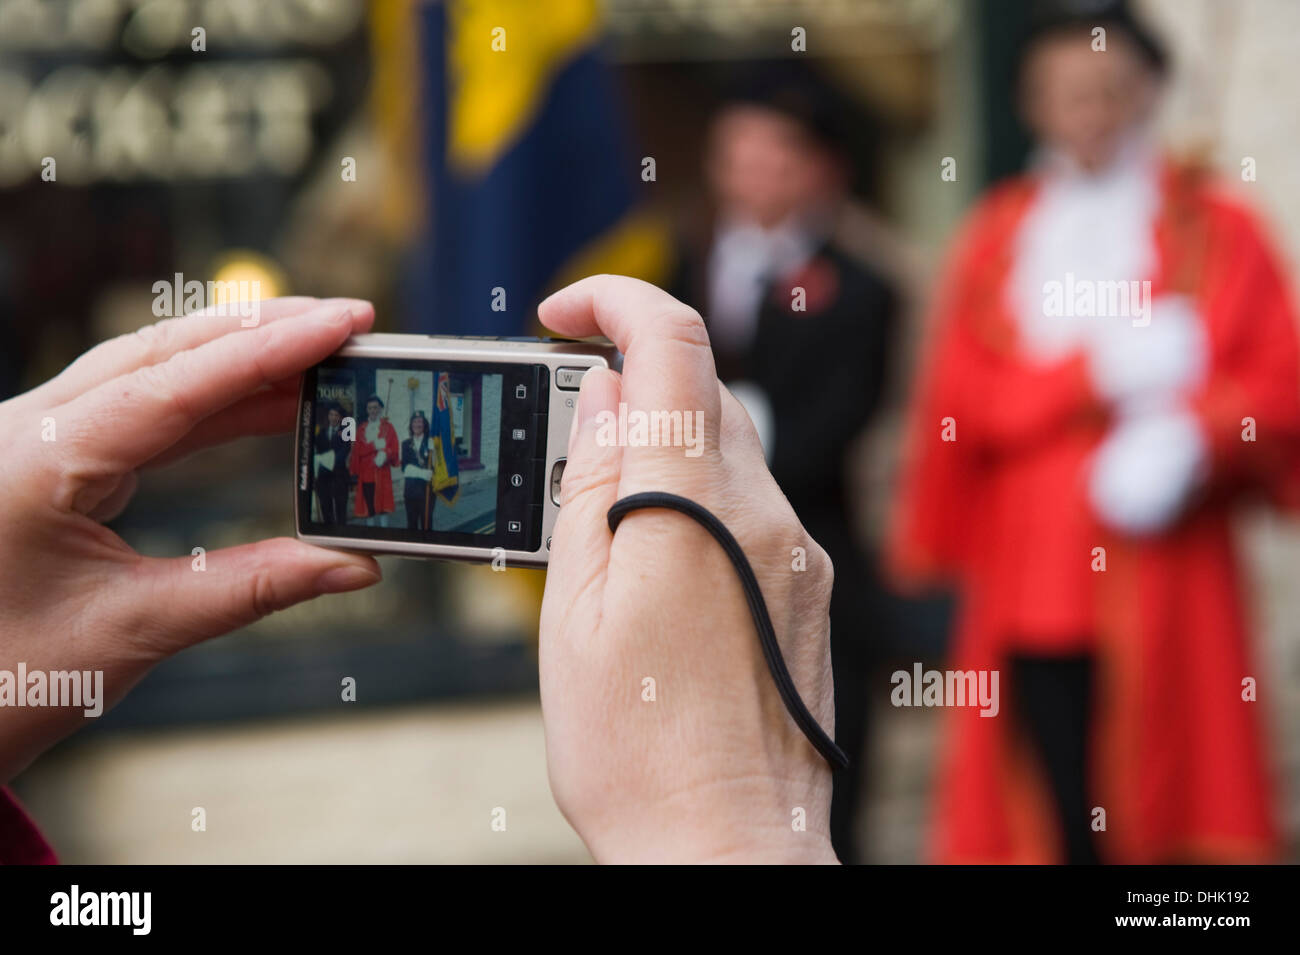 Femme à l'aide d'un appareil photo numérique pour la photographie souvenir parade de dimanche à Hay-on-Wye Powys Pays de Galles UK Banque D'Images